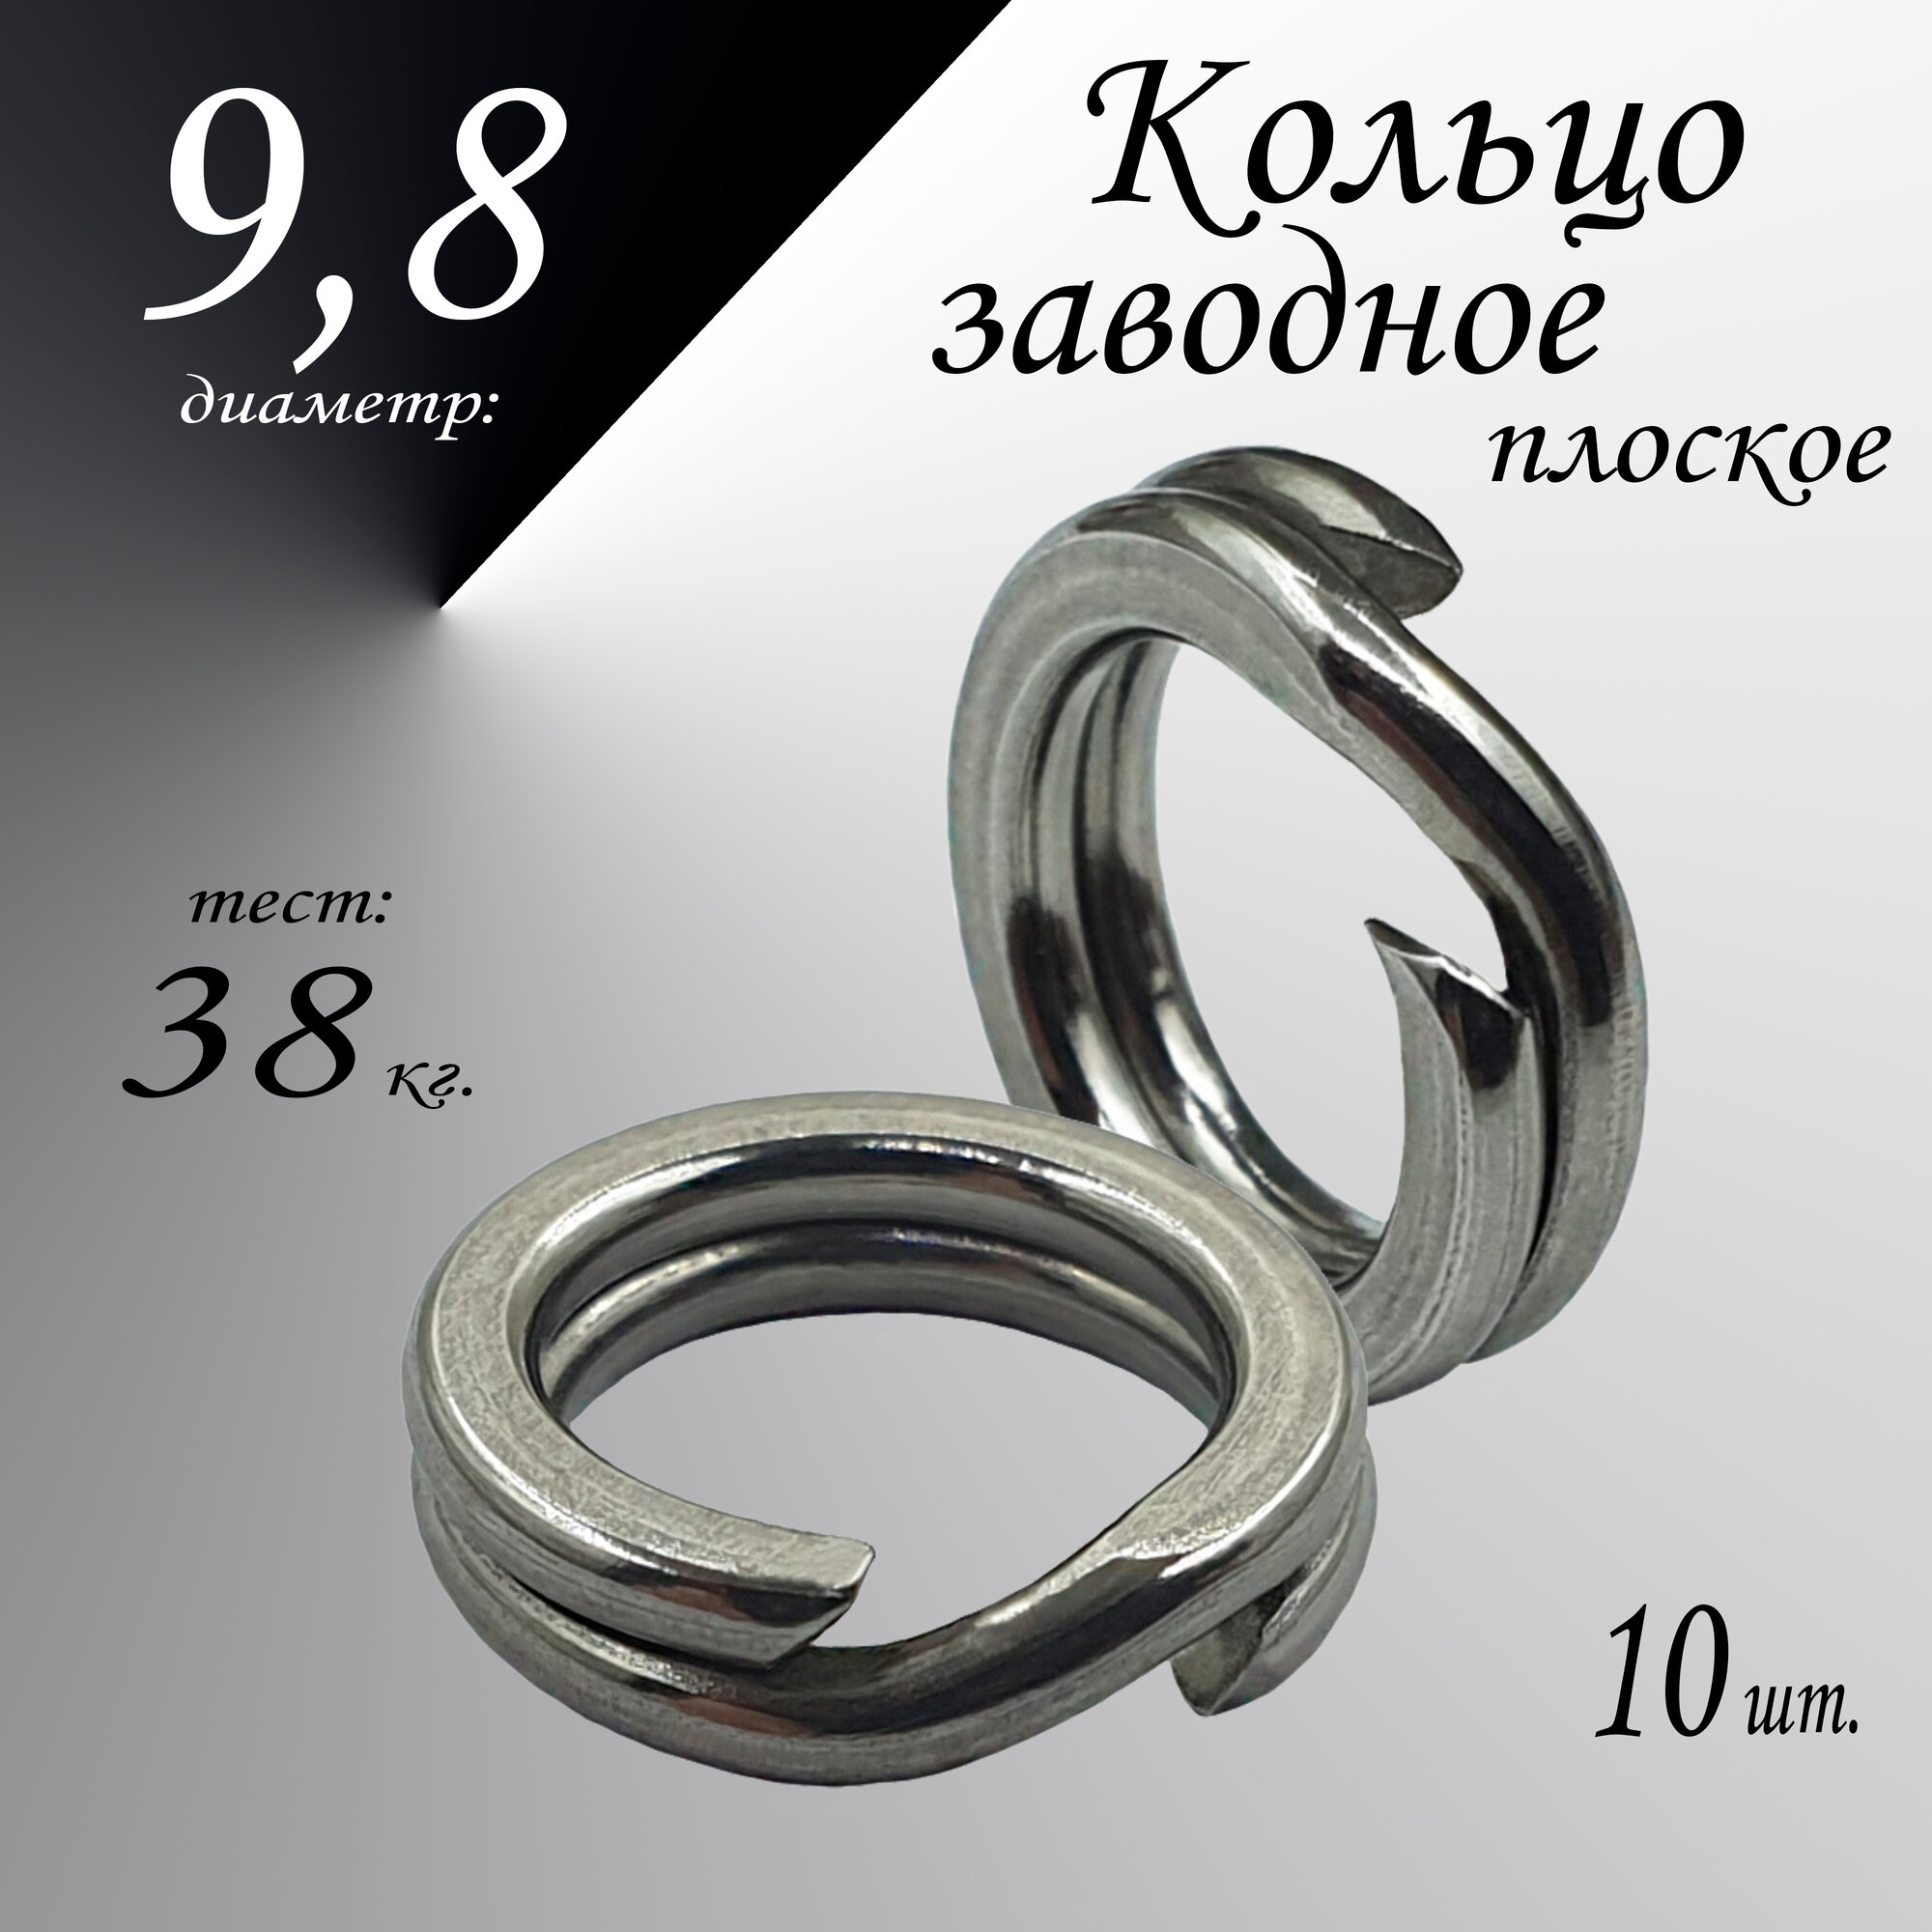 Заводное кольцо, плоское, диам-9,8 мм, тест 38 кг, (в уп. 10 шт.)